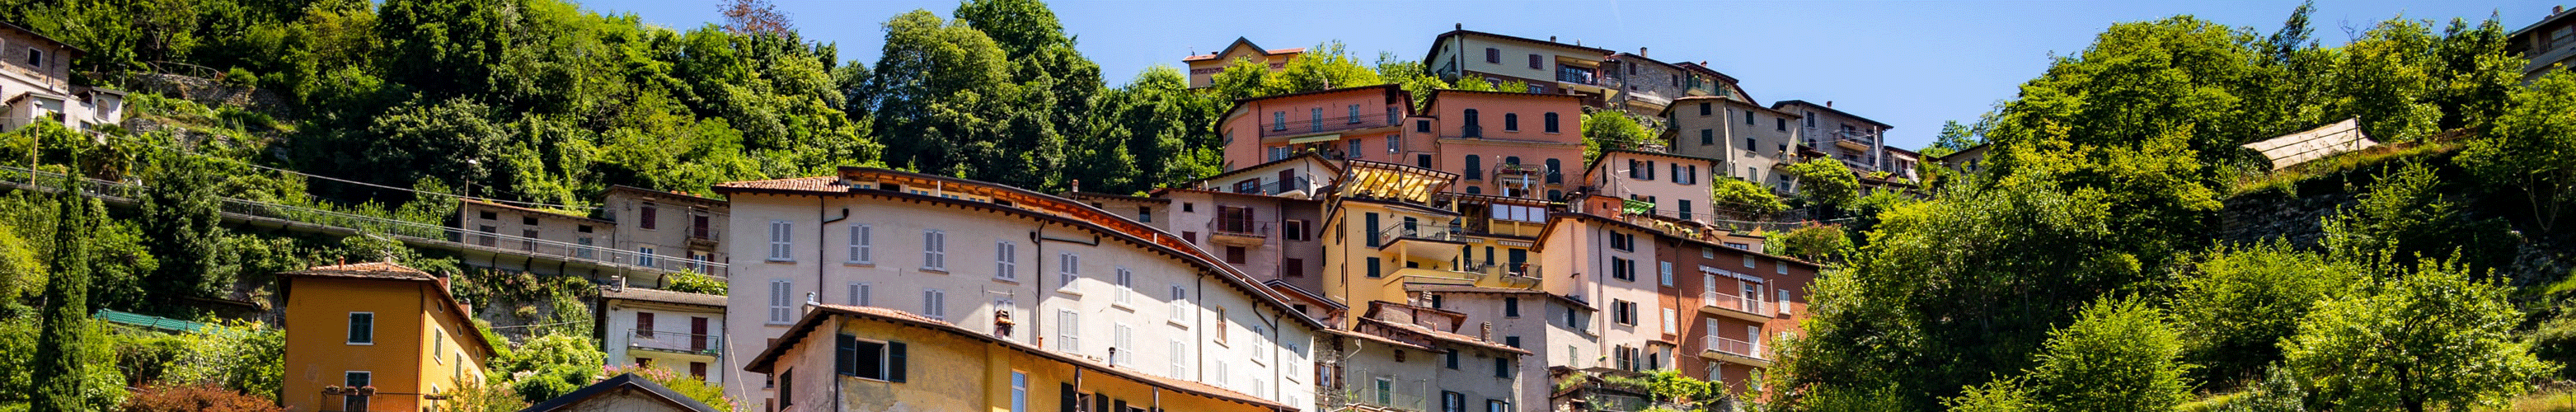 Italienisches Dorf auf einem Hügel